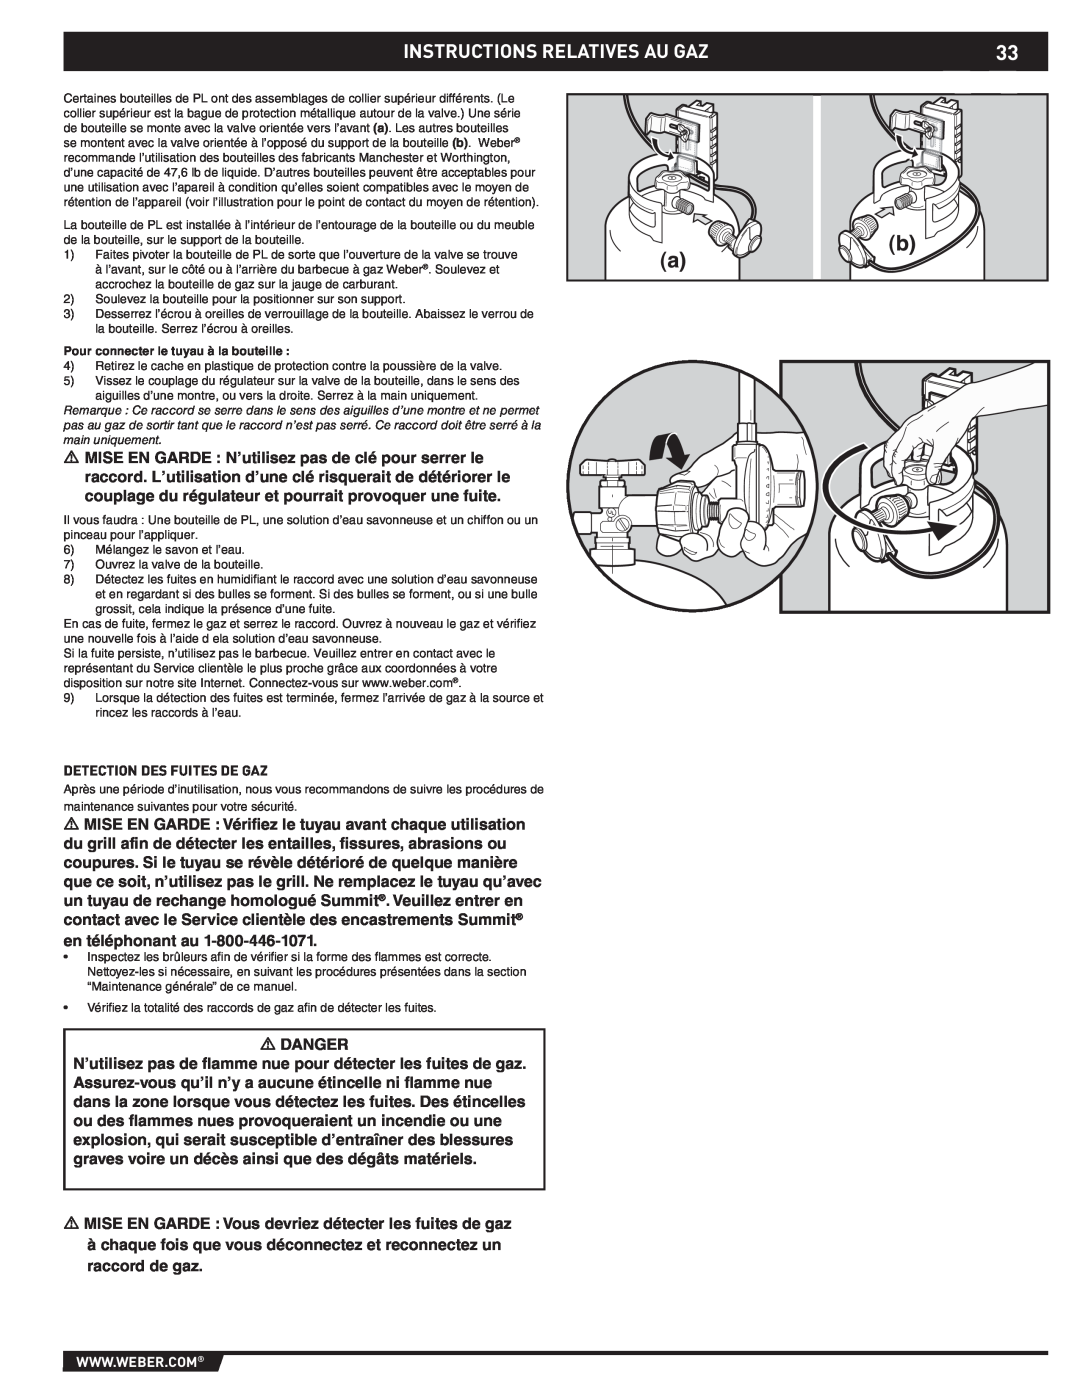 Weber 43176 manual Instructions Relatives Au Gaz, Danger 